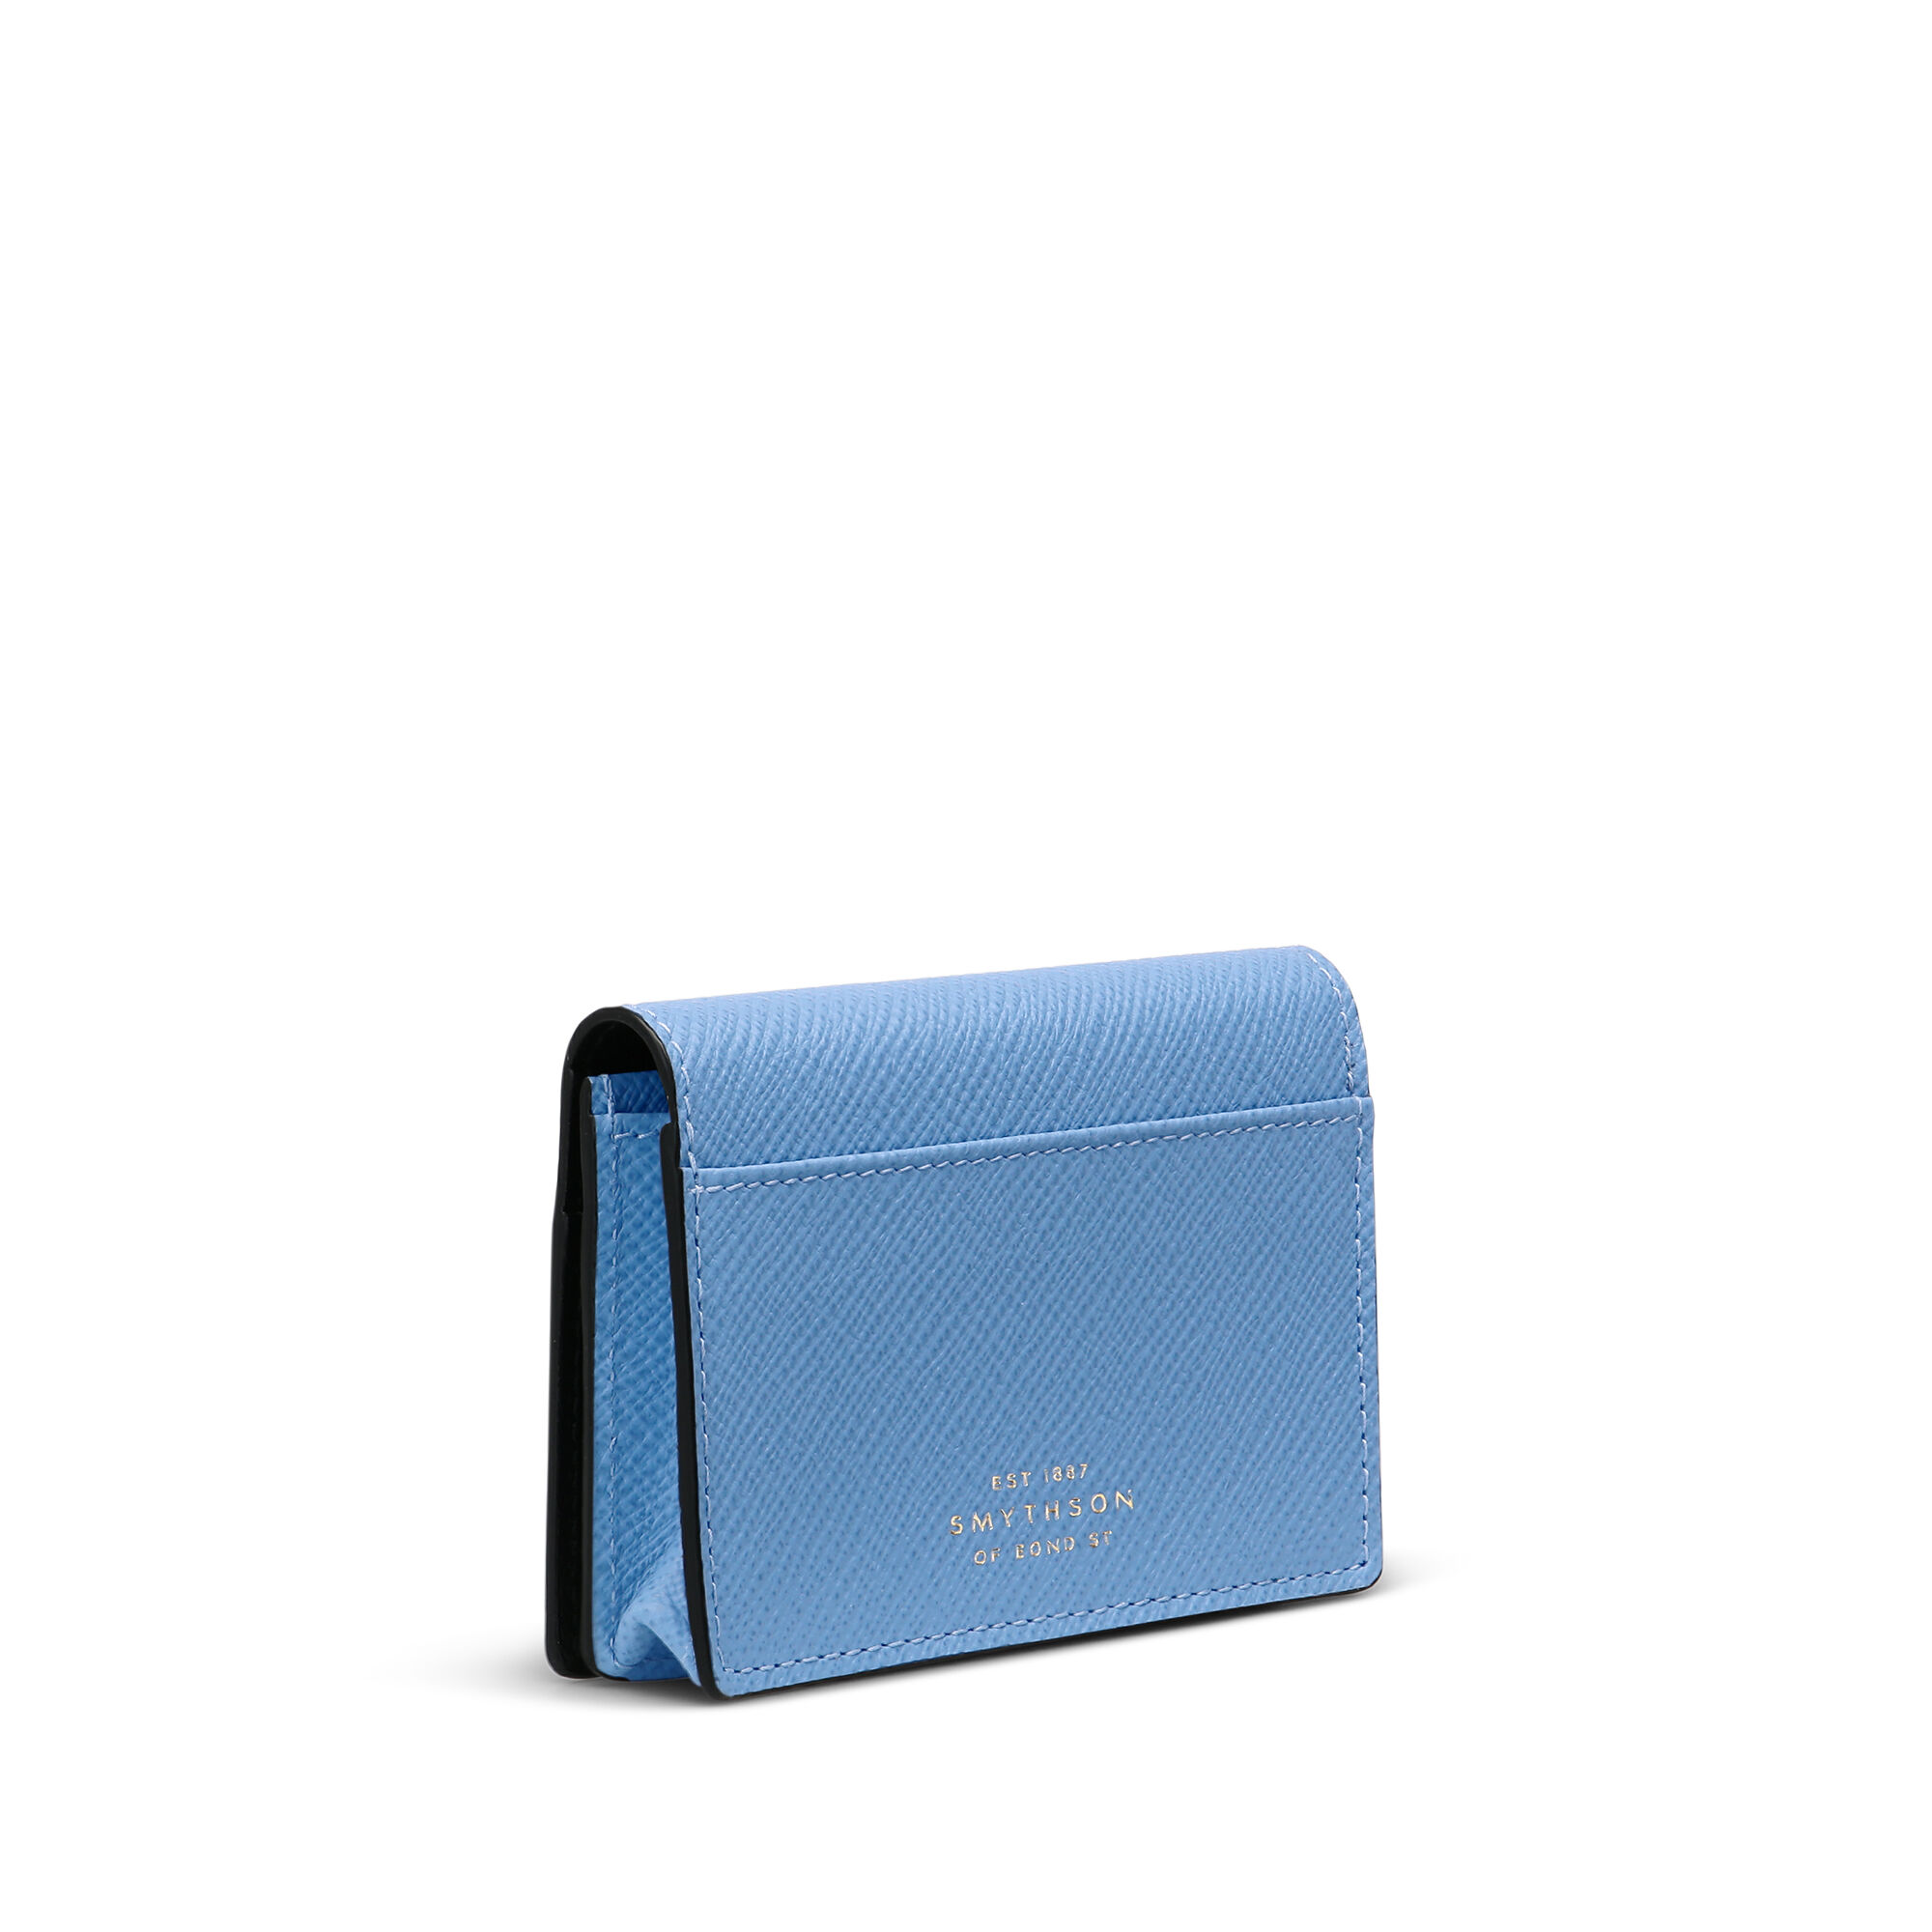 Panamaレザー二つ折りカードケース、スナップボタン付き in nile blue